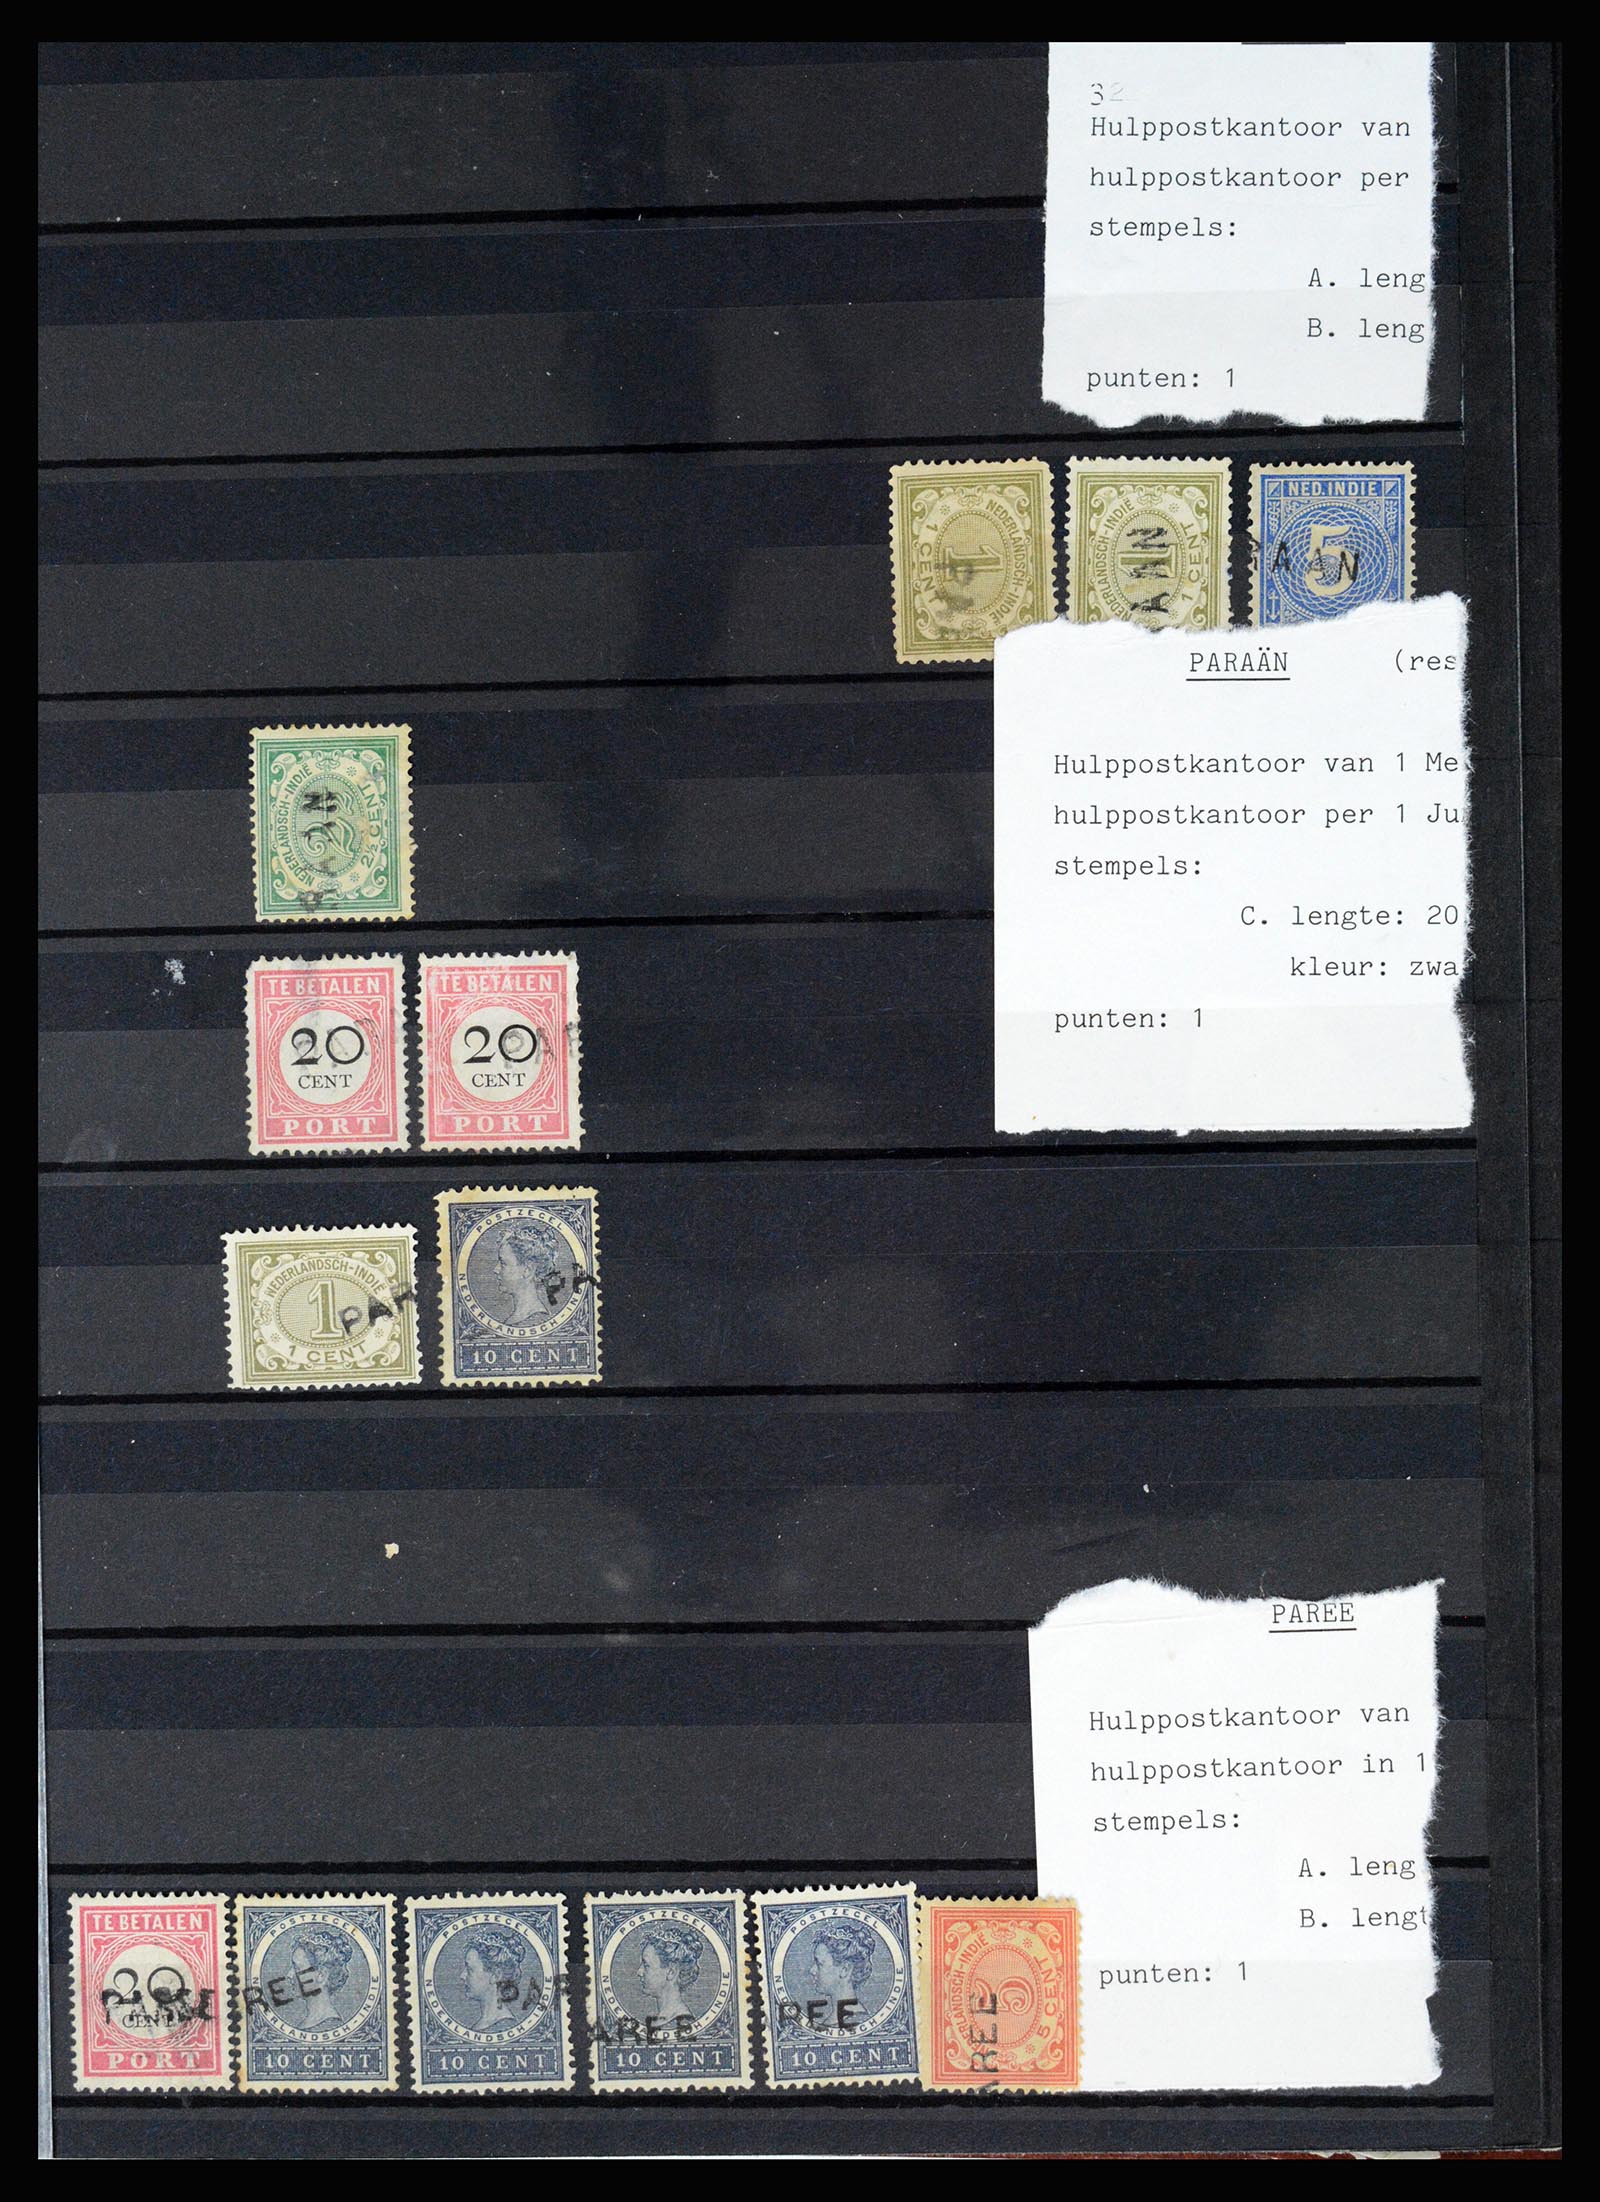 36512 051 - Stamp collection 36512 Nederlands Indië stempels 1872-1930.